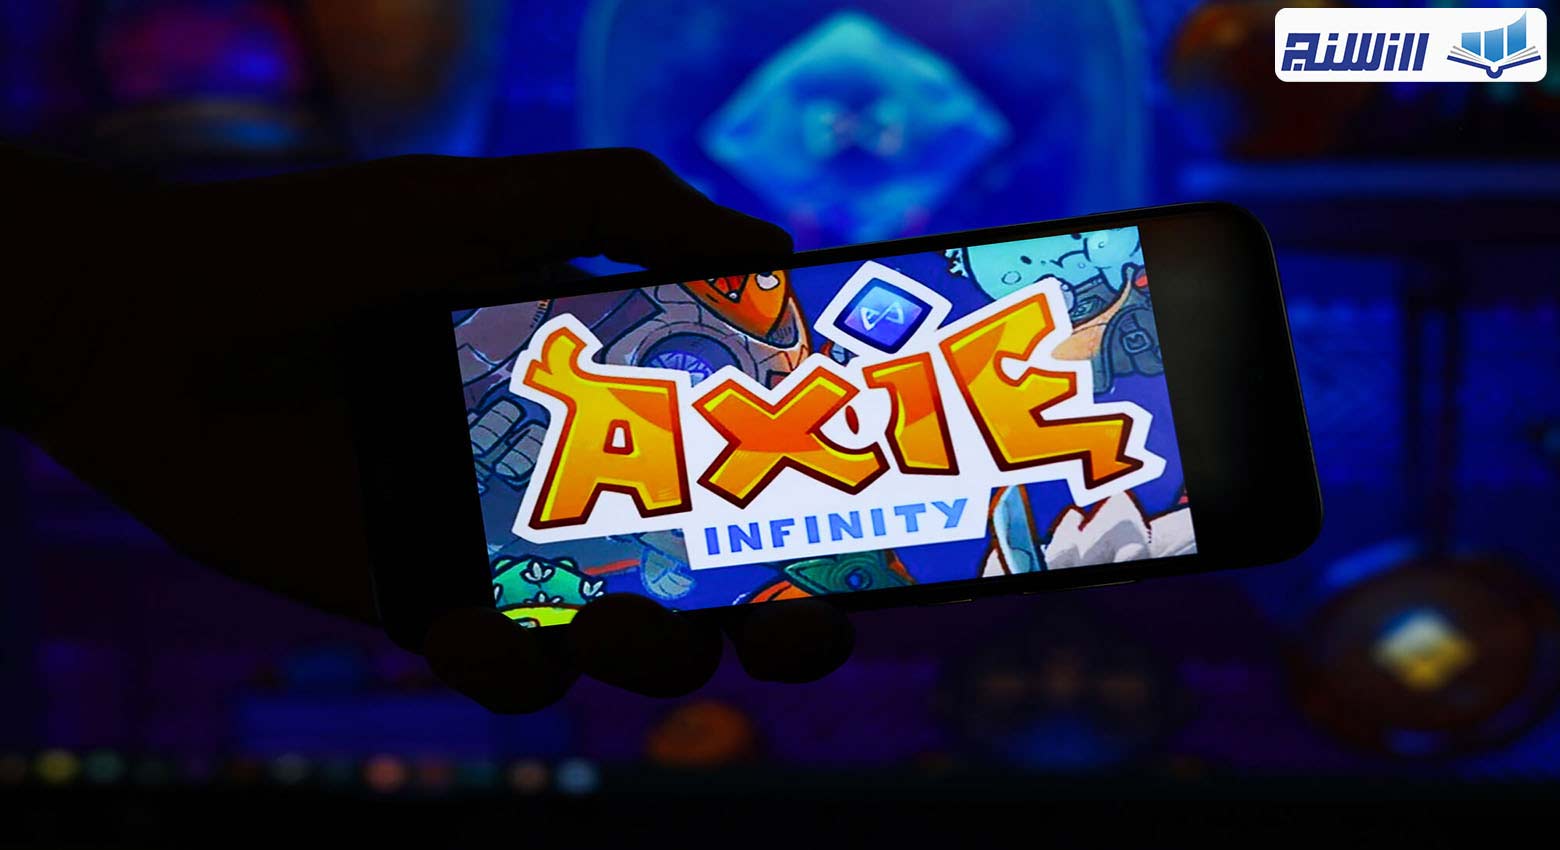 بازی Axie Infinity چیست؟